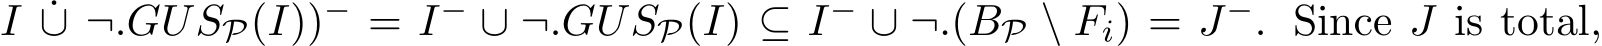 I ˙∪ ¬.GUSP(I))− = I− ∪ ¬.GUSP(I) ⊆ I− ∪ ¬.(BP \ Fi) = J−. Since J is total,